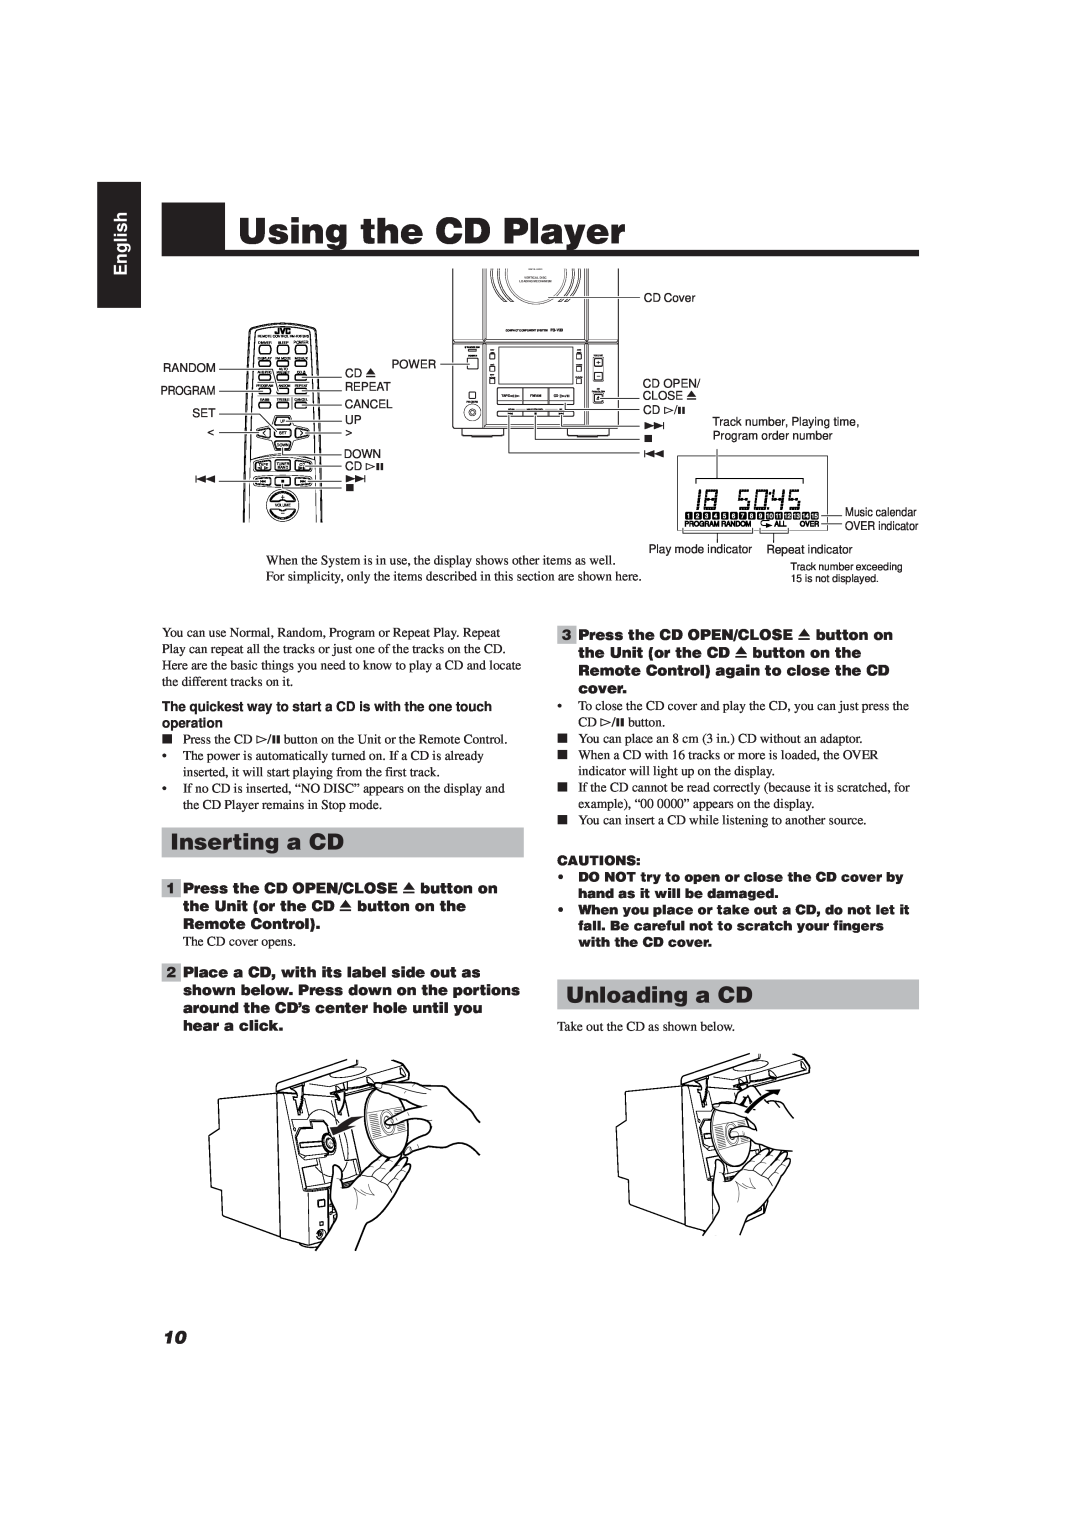 JVC FS-V30 manual Using the CD Player, Inserting a CD, Unloading a CD, English 